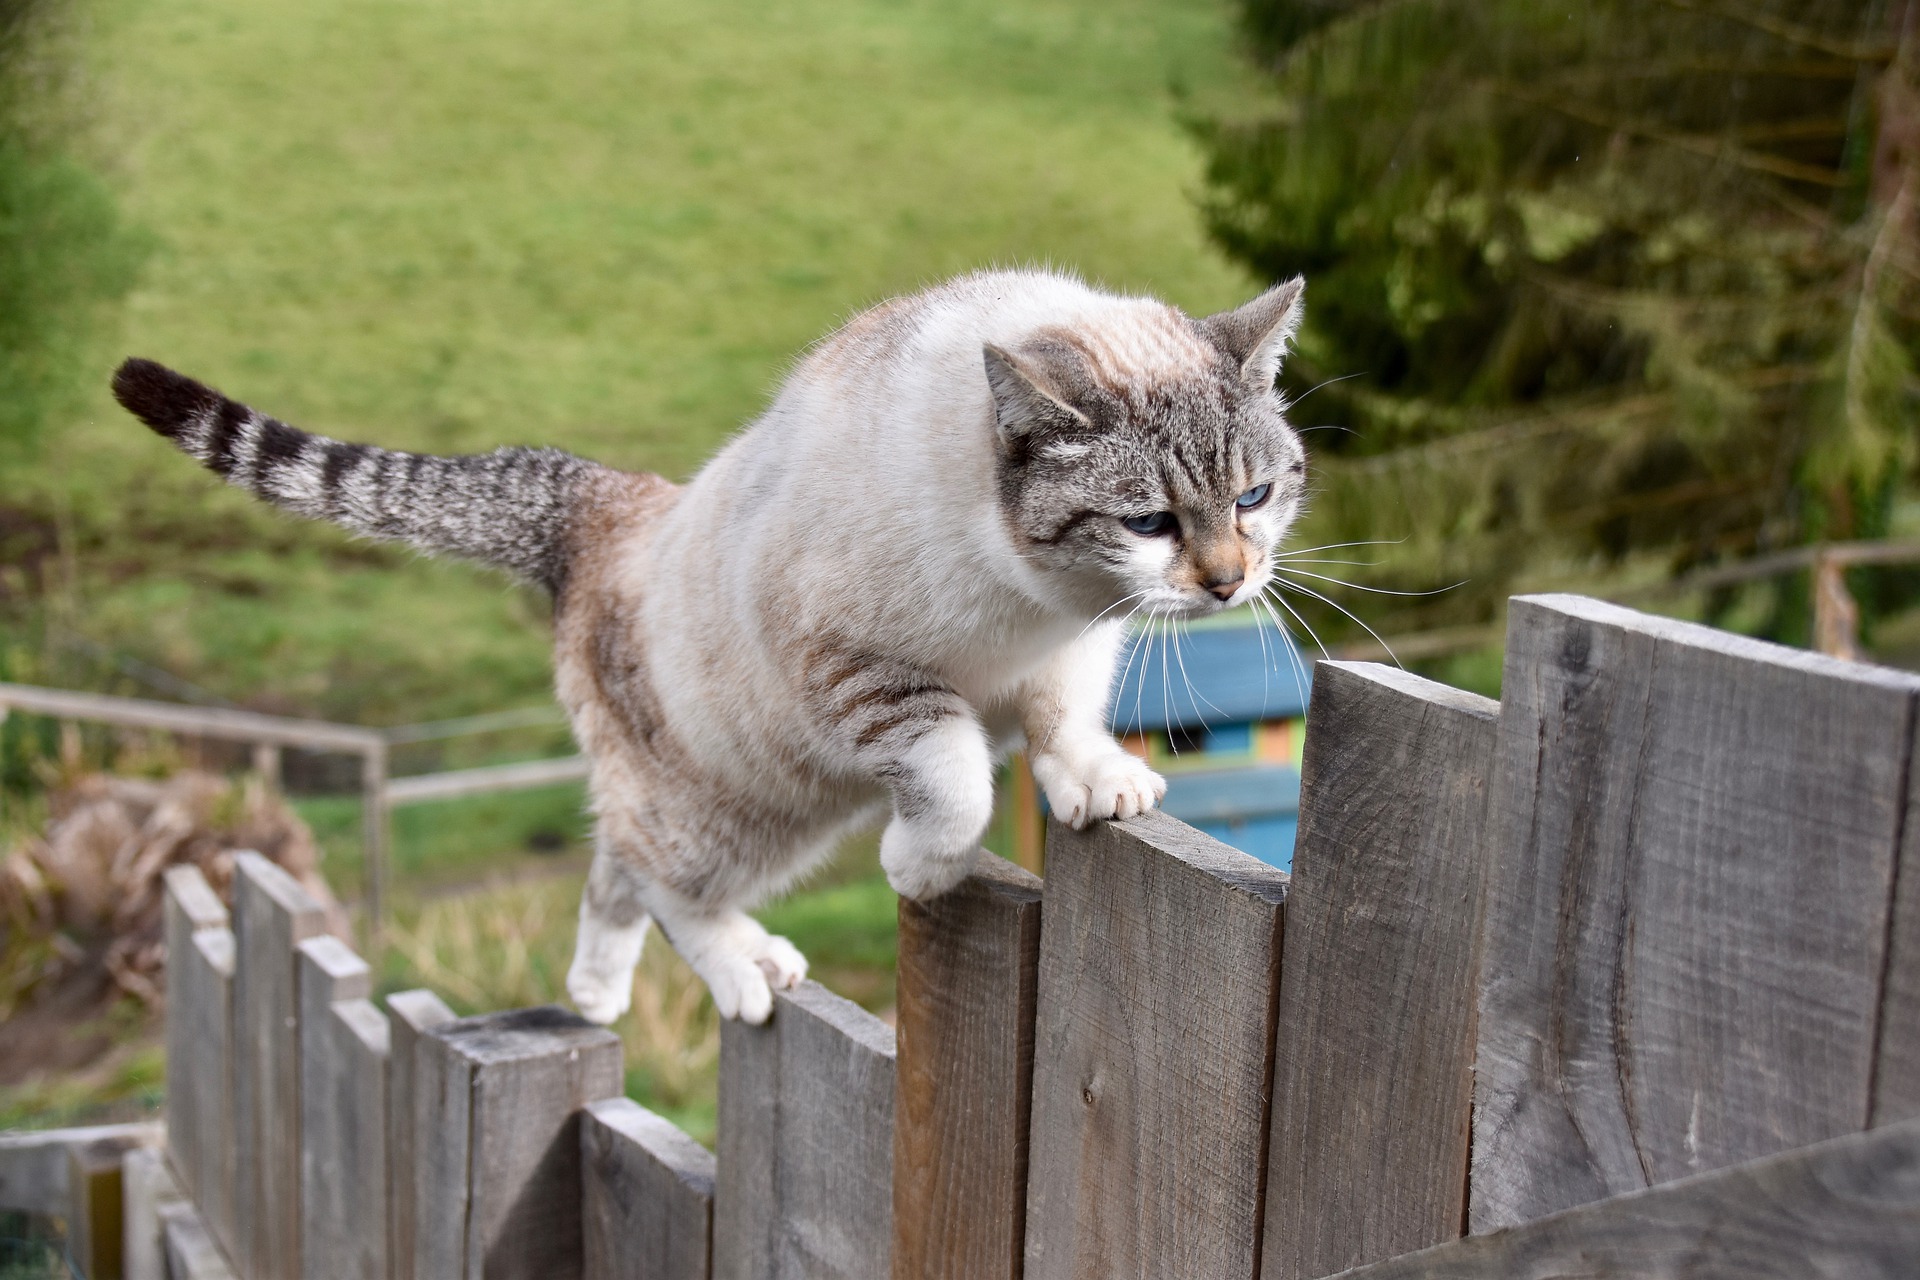 Mačka z rôznych dôvodov pokrivkáva, najbežnejšie sú mačky, ktoré chodia von bez dozoru. K rezom však môže dôjsť aj doma, napríklad pri skoku z veľkej výšky, pri šliapaní na sklenený fragment alebo pri šliapaní na ňu.